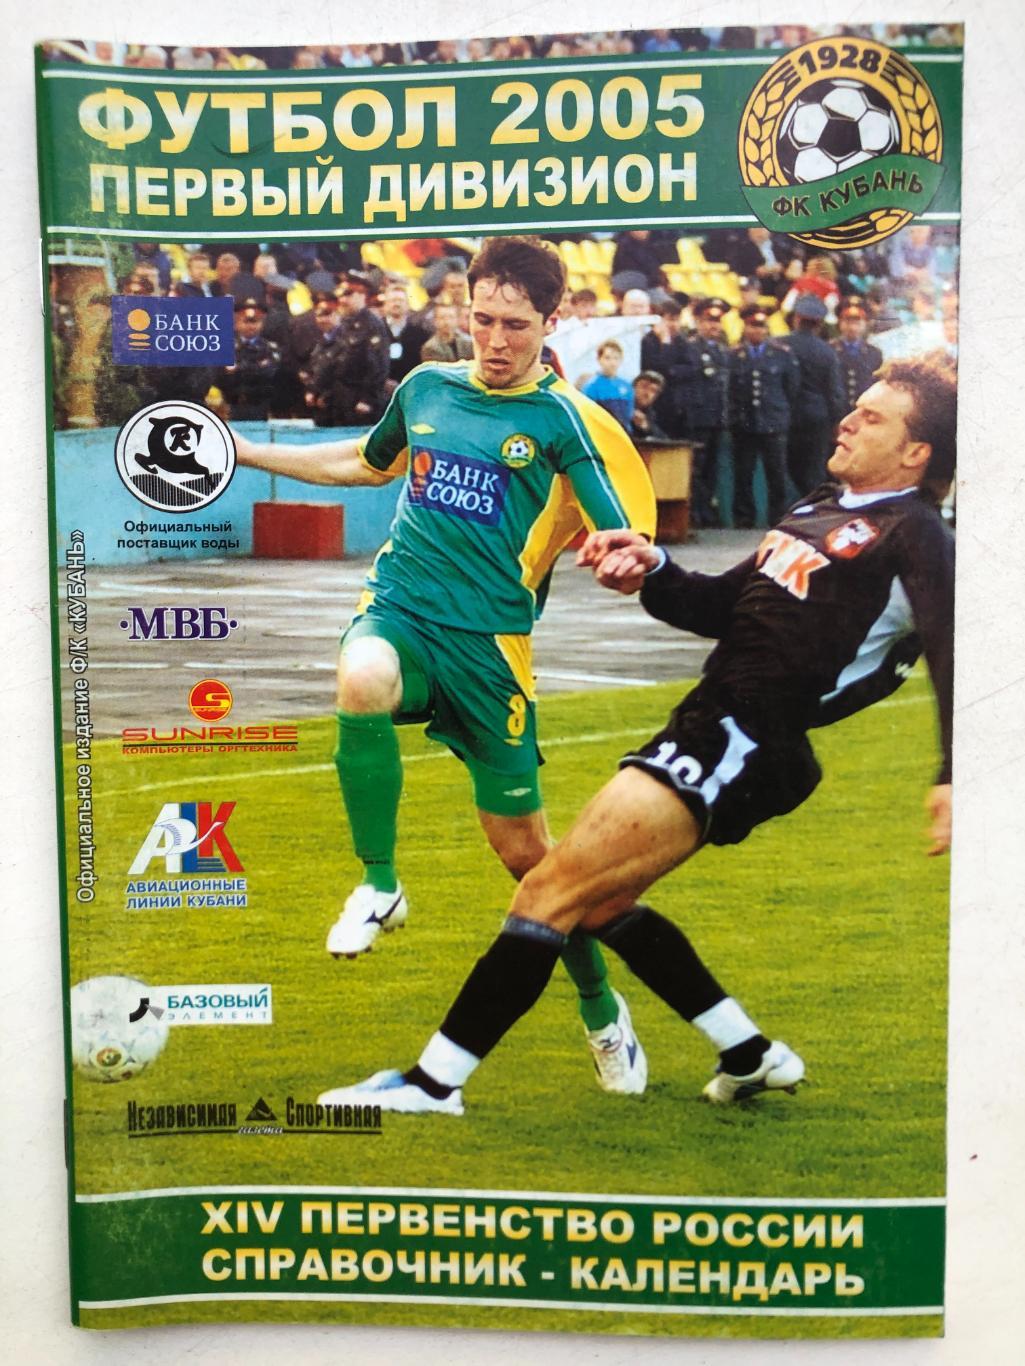 Футбол 2005 Кубань Краснодар Календарь справочник